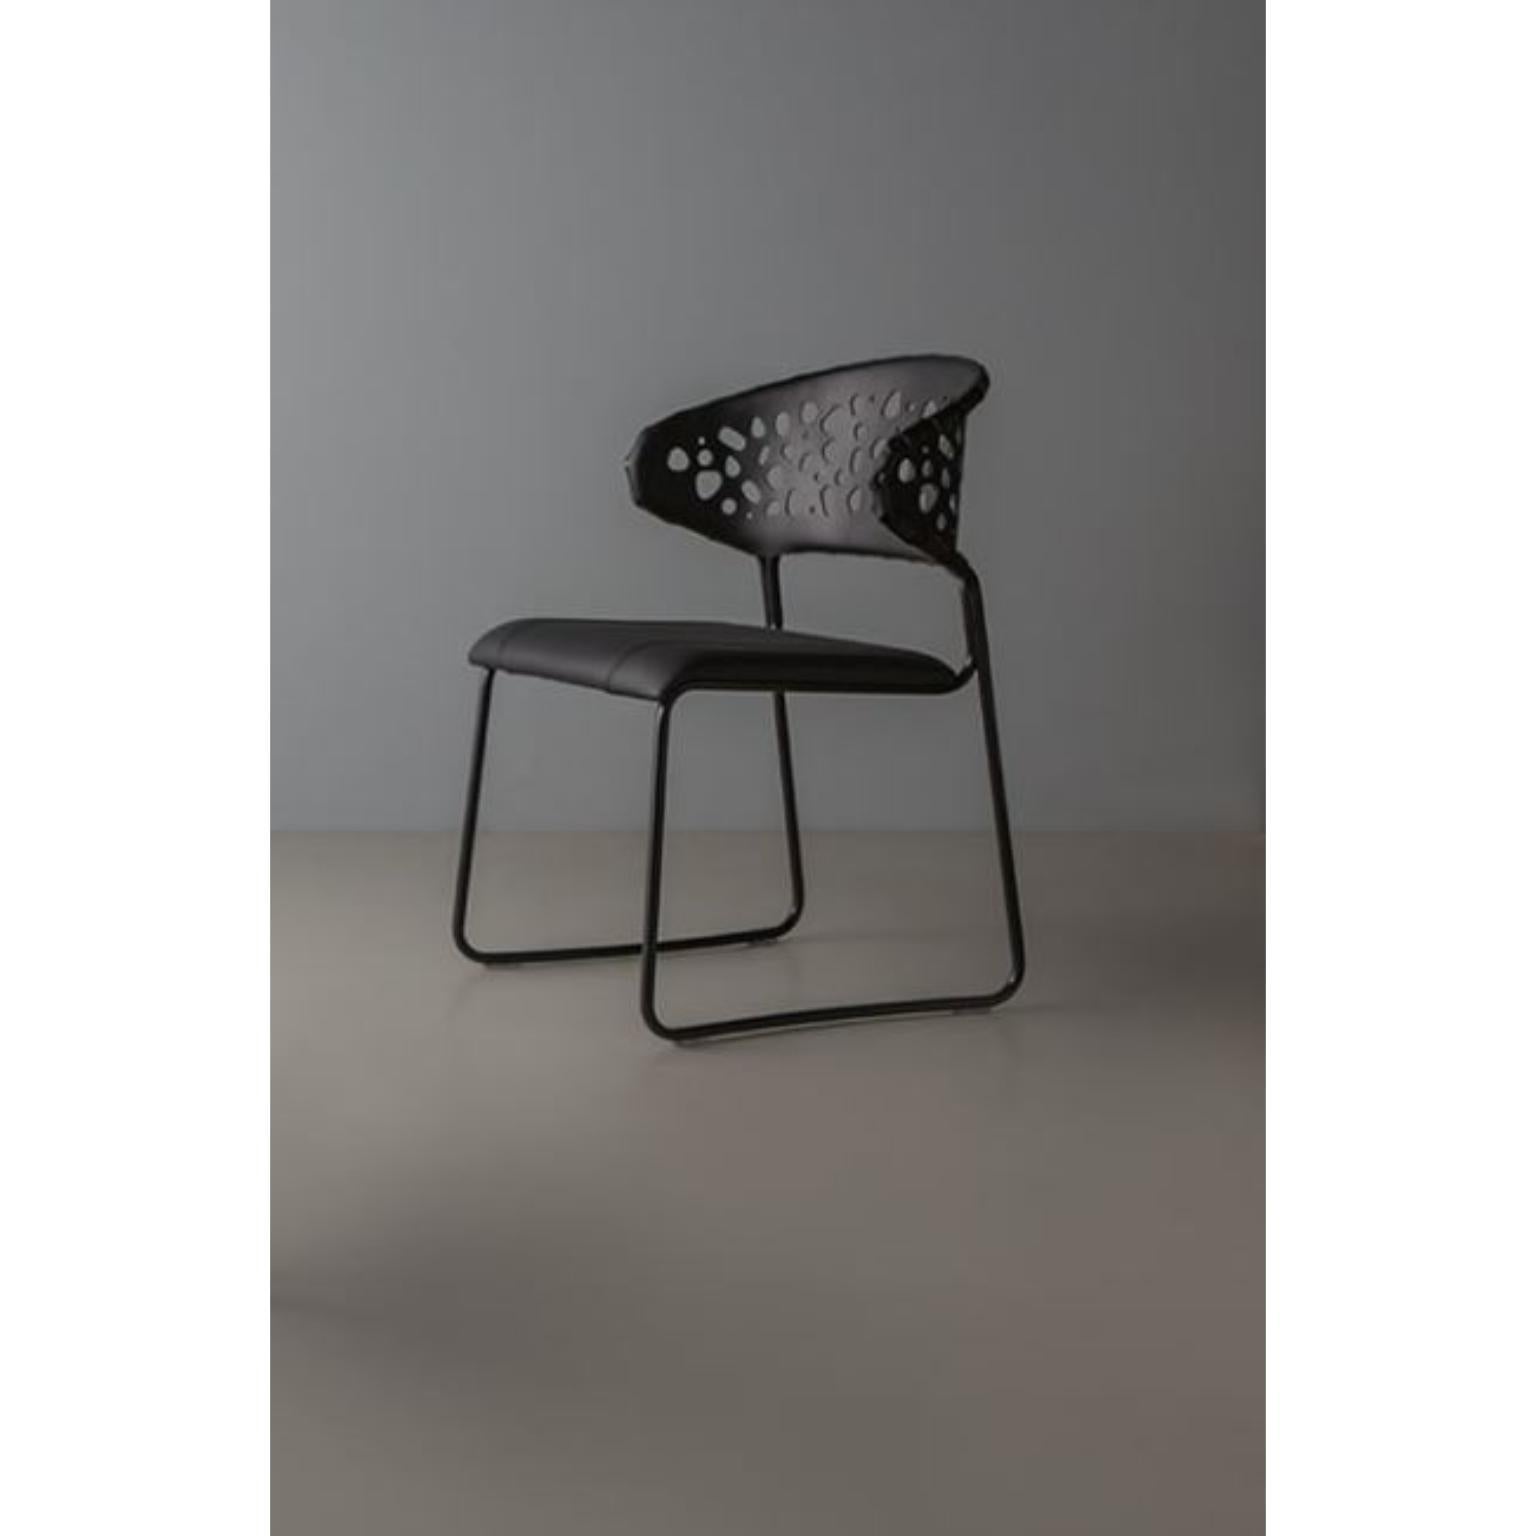 Foratta-Stuhl von Doimo Brasil
Abmessungen: B 59 x T 58 x H 79 cm 
MATERIALIEN: Metall, Naturleder mit gepolstertem Sitz.


Mit der Absicht, guten Geschmack und Persönlichkeit zu vermitteln, entschlüsselt Doimo Trends und folgt der Entwicklung des